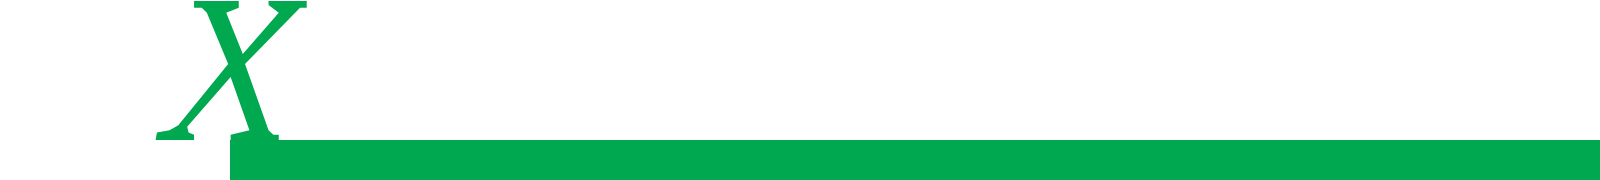 L'Expert Carrossier - Icône X du logo avec ligne verte